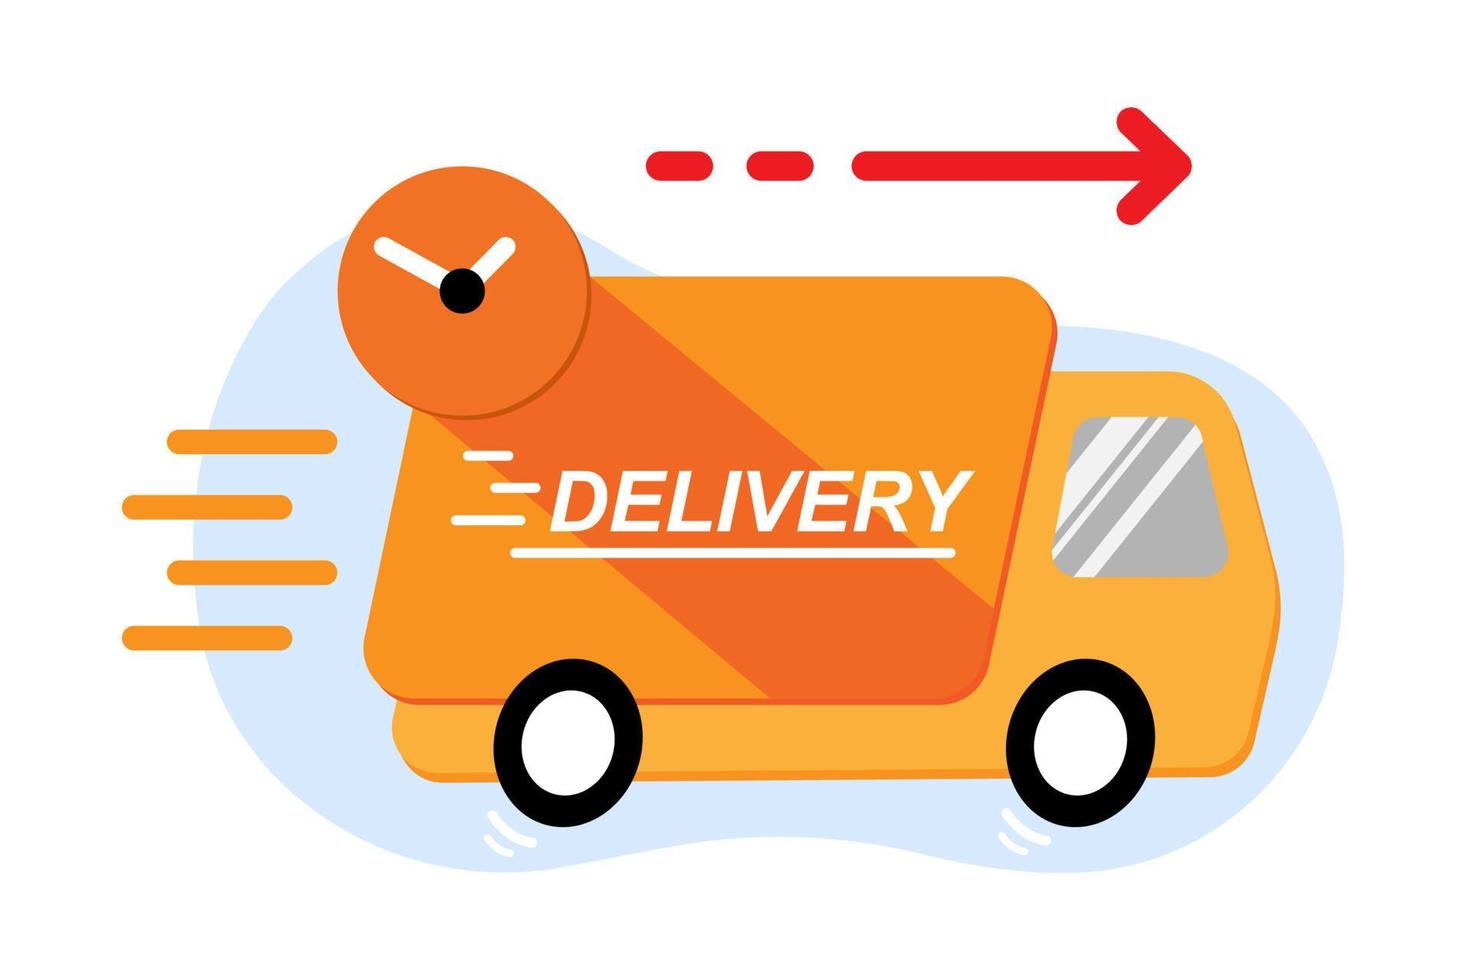 ícone de caminhão de entrega rápida. caminhão com serviço de entrega rápida. caminhão de entrega com ícone de relógio e ícone rápido. ilustração em vetor design plano.